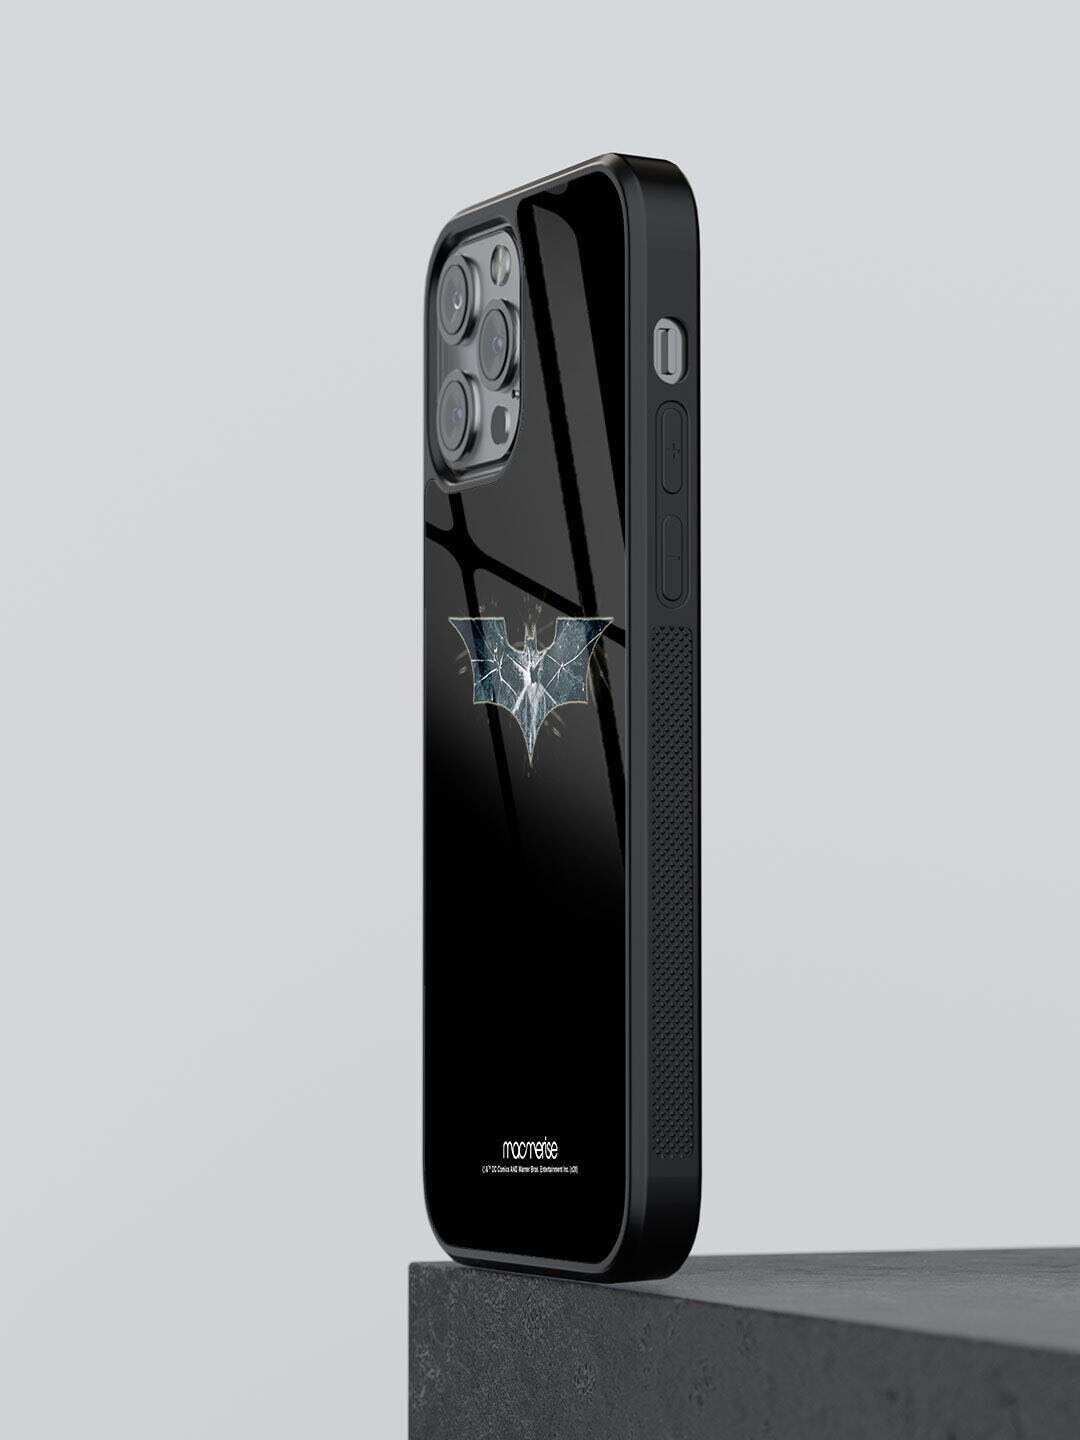 macmerise Black & Grey Batman Classic iPhone 12 Pro Max Mobile Phone Case Price in India